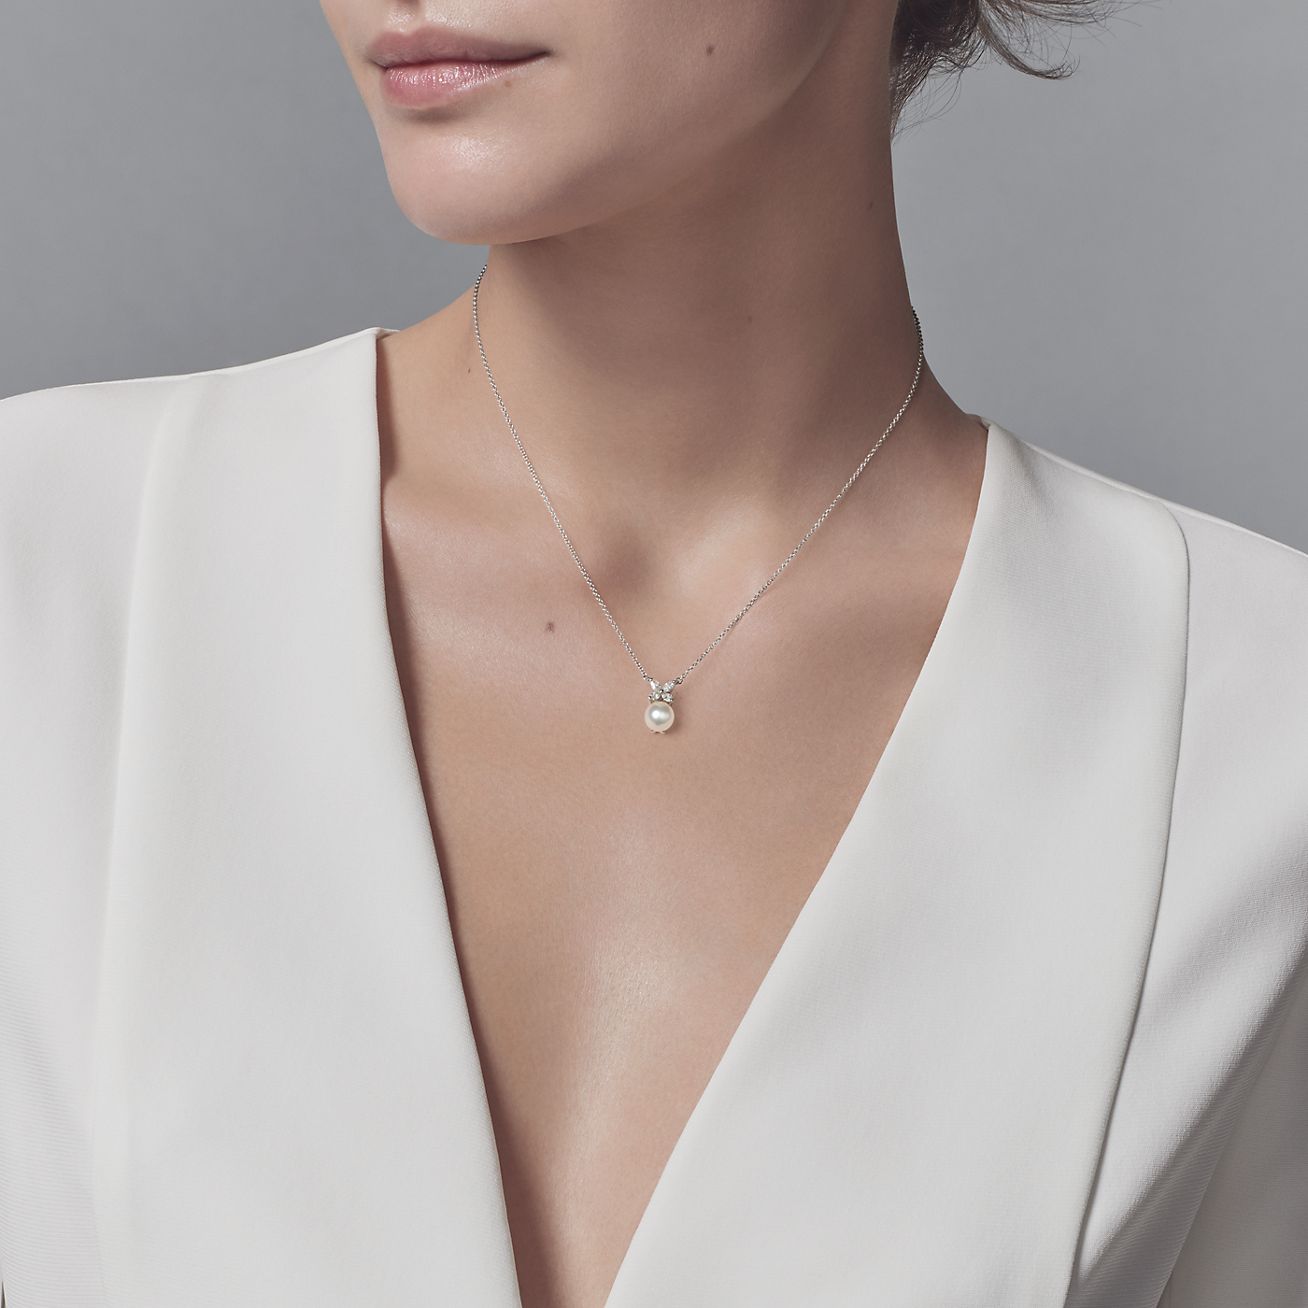 Tiffany Victoria™ pendant in platinum 